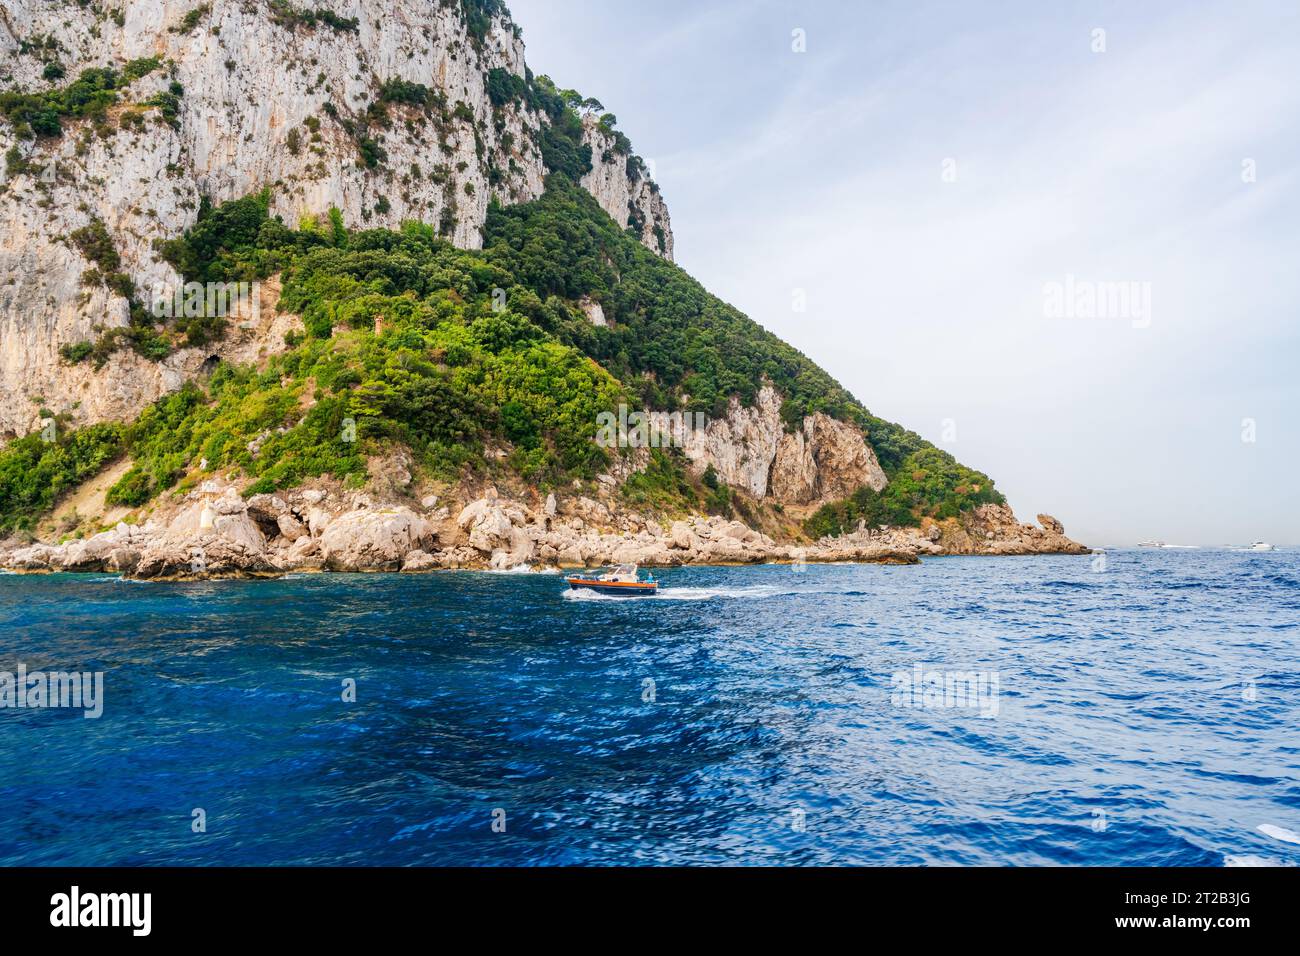 Paysage côtier accidenté de l'île de Capri, Italie Banque D'Images